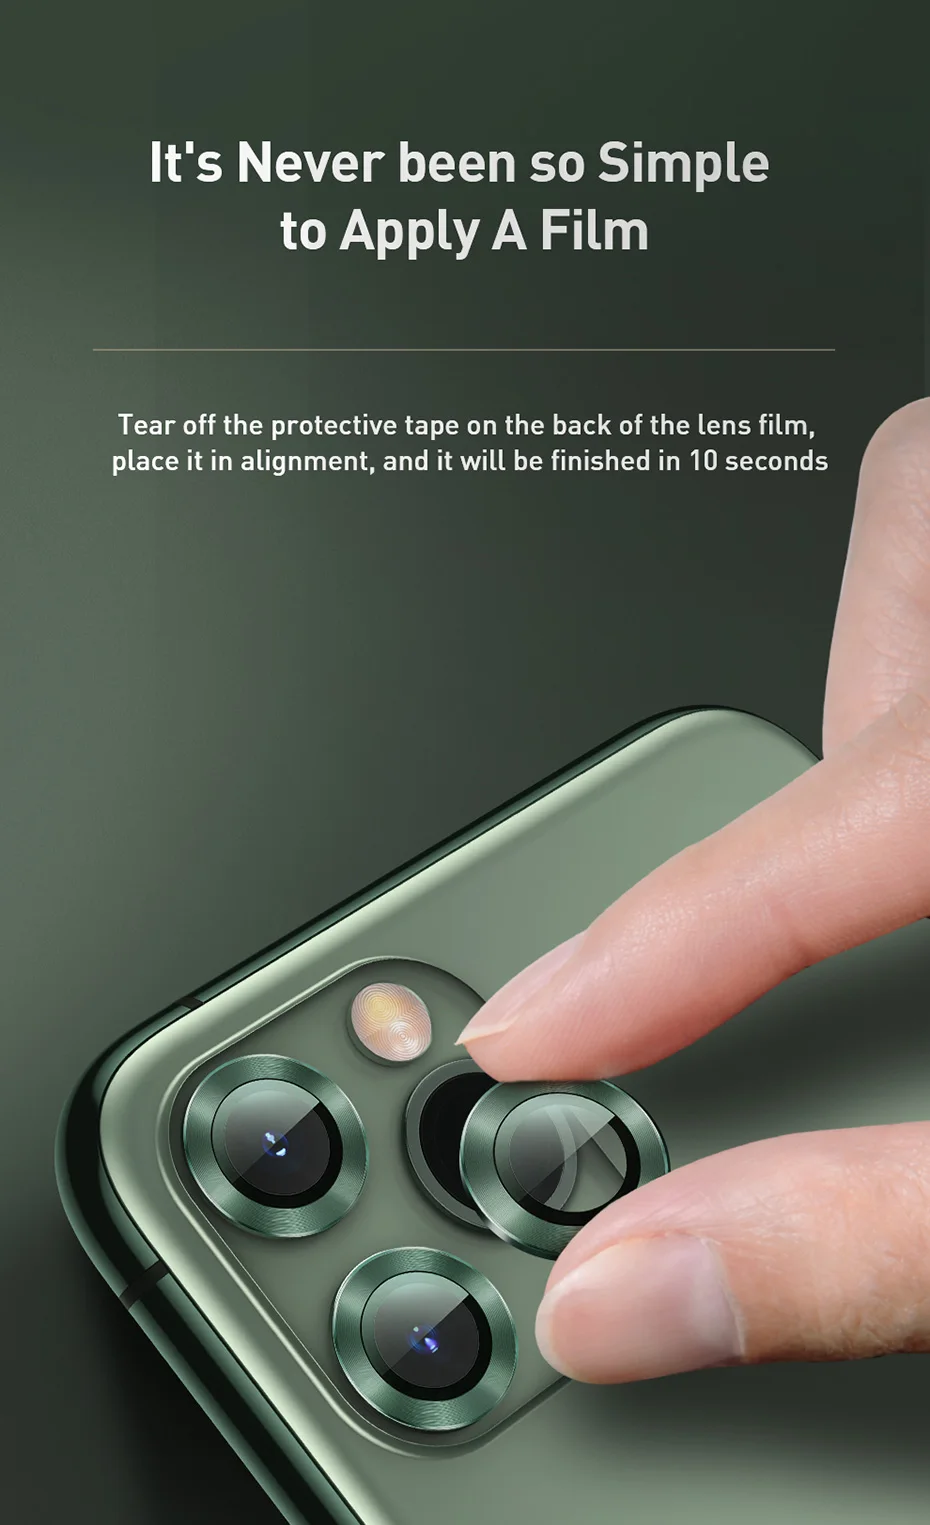 Bộ ốp viền kim loại tích hợp cường lực chống trầy Camera cho iPhone 11 - 11 Pro - 11 Pro Max - iPhone 12 - 12 Mini - 12 Pro hiệu Baseus Alloy Protection Ring Lens Film